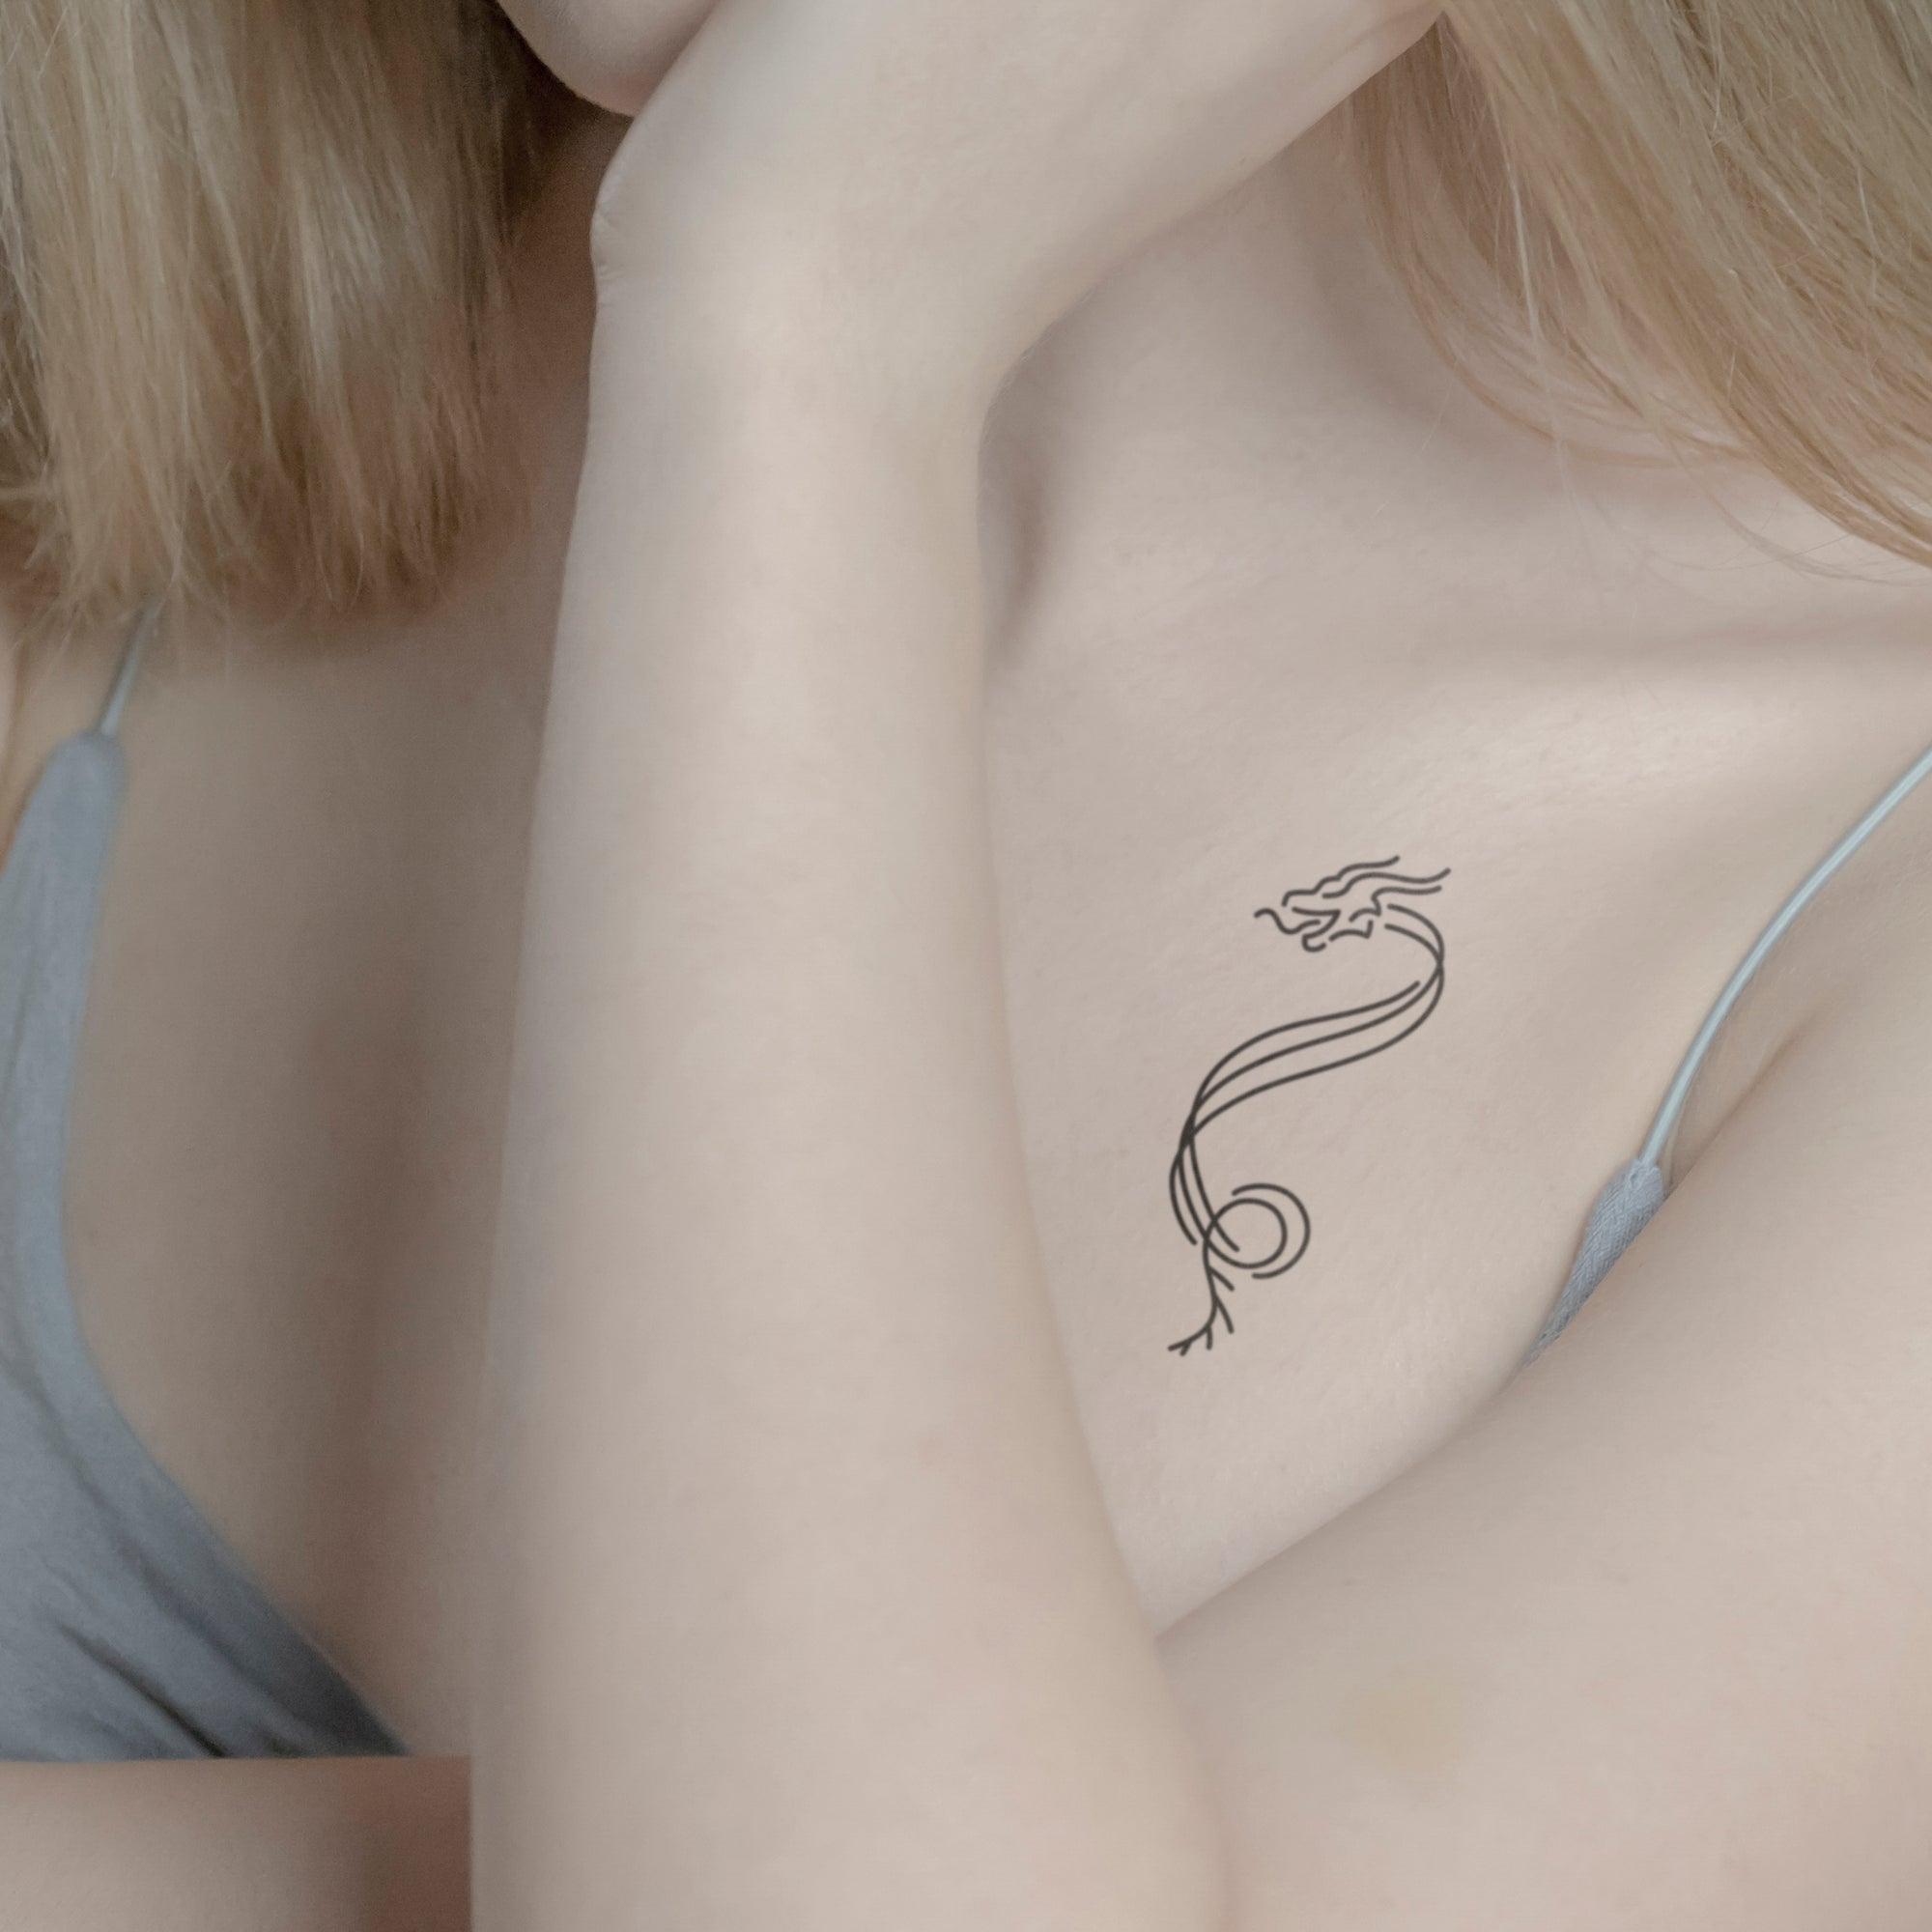 Abstrakter Drache Tattoo von minink, der Marke für temporäre Tattoos.